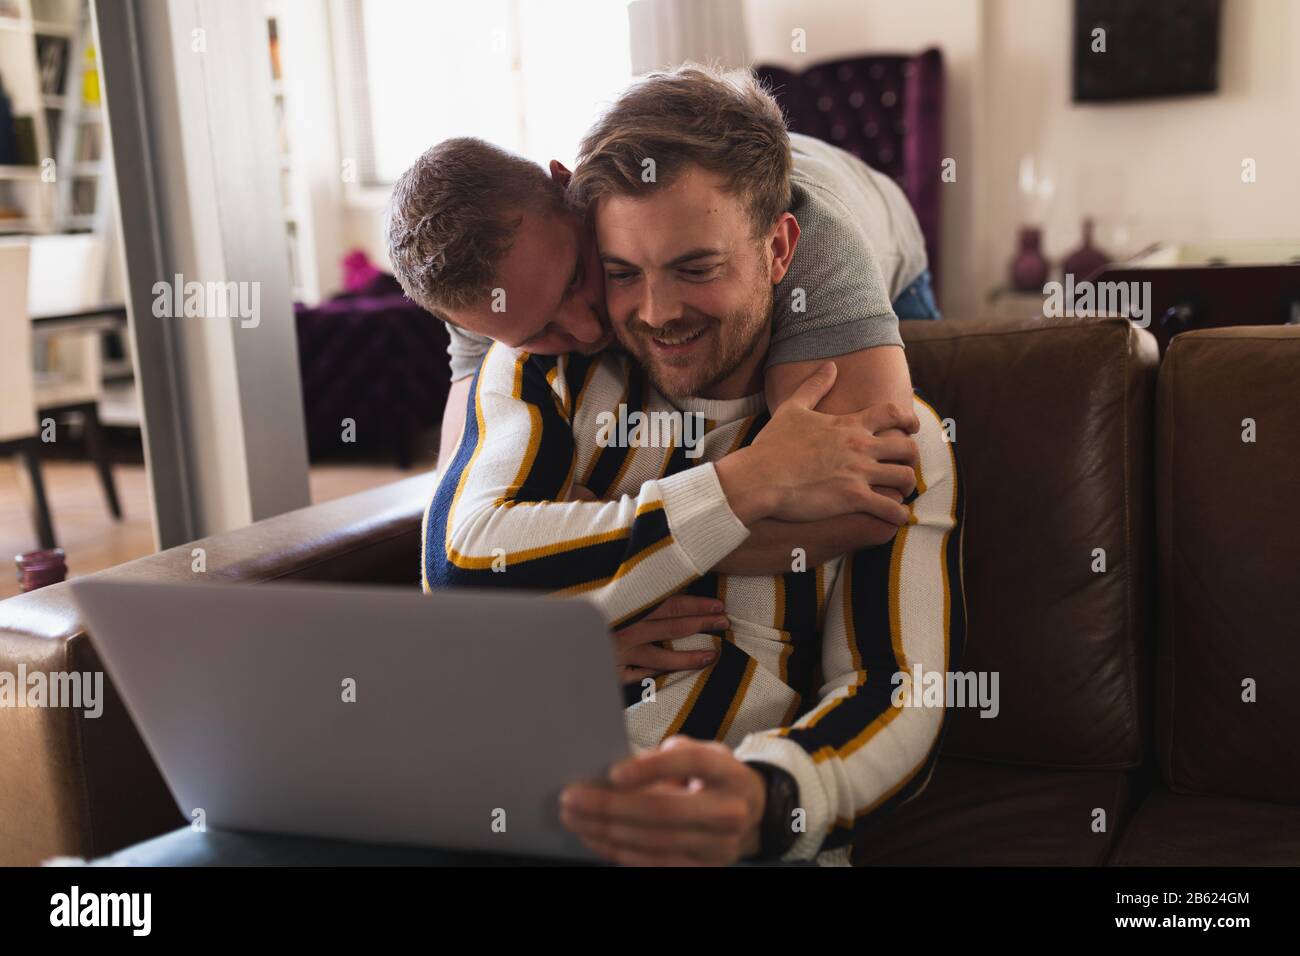 Vue avant couple homosexuel regardant l'ordinateur portable Banque D'Images